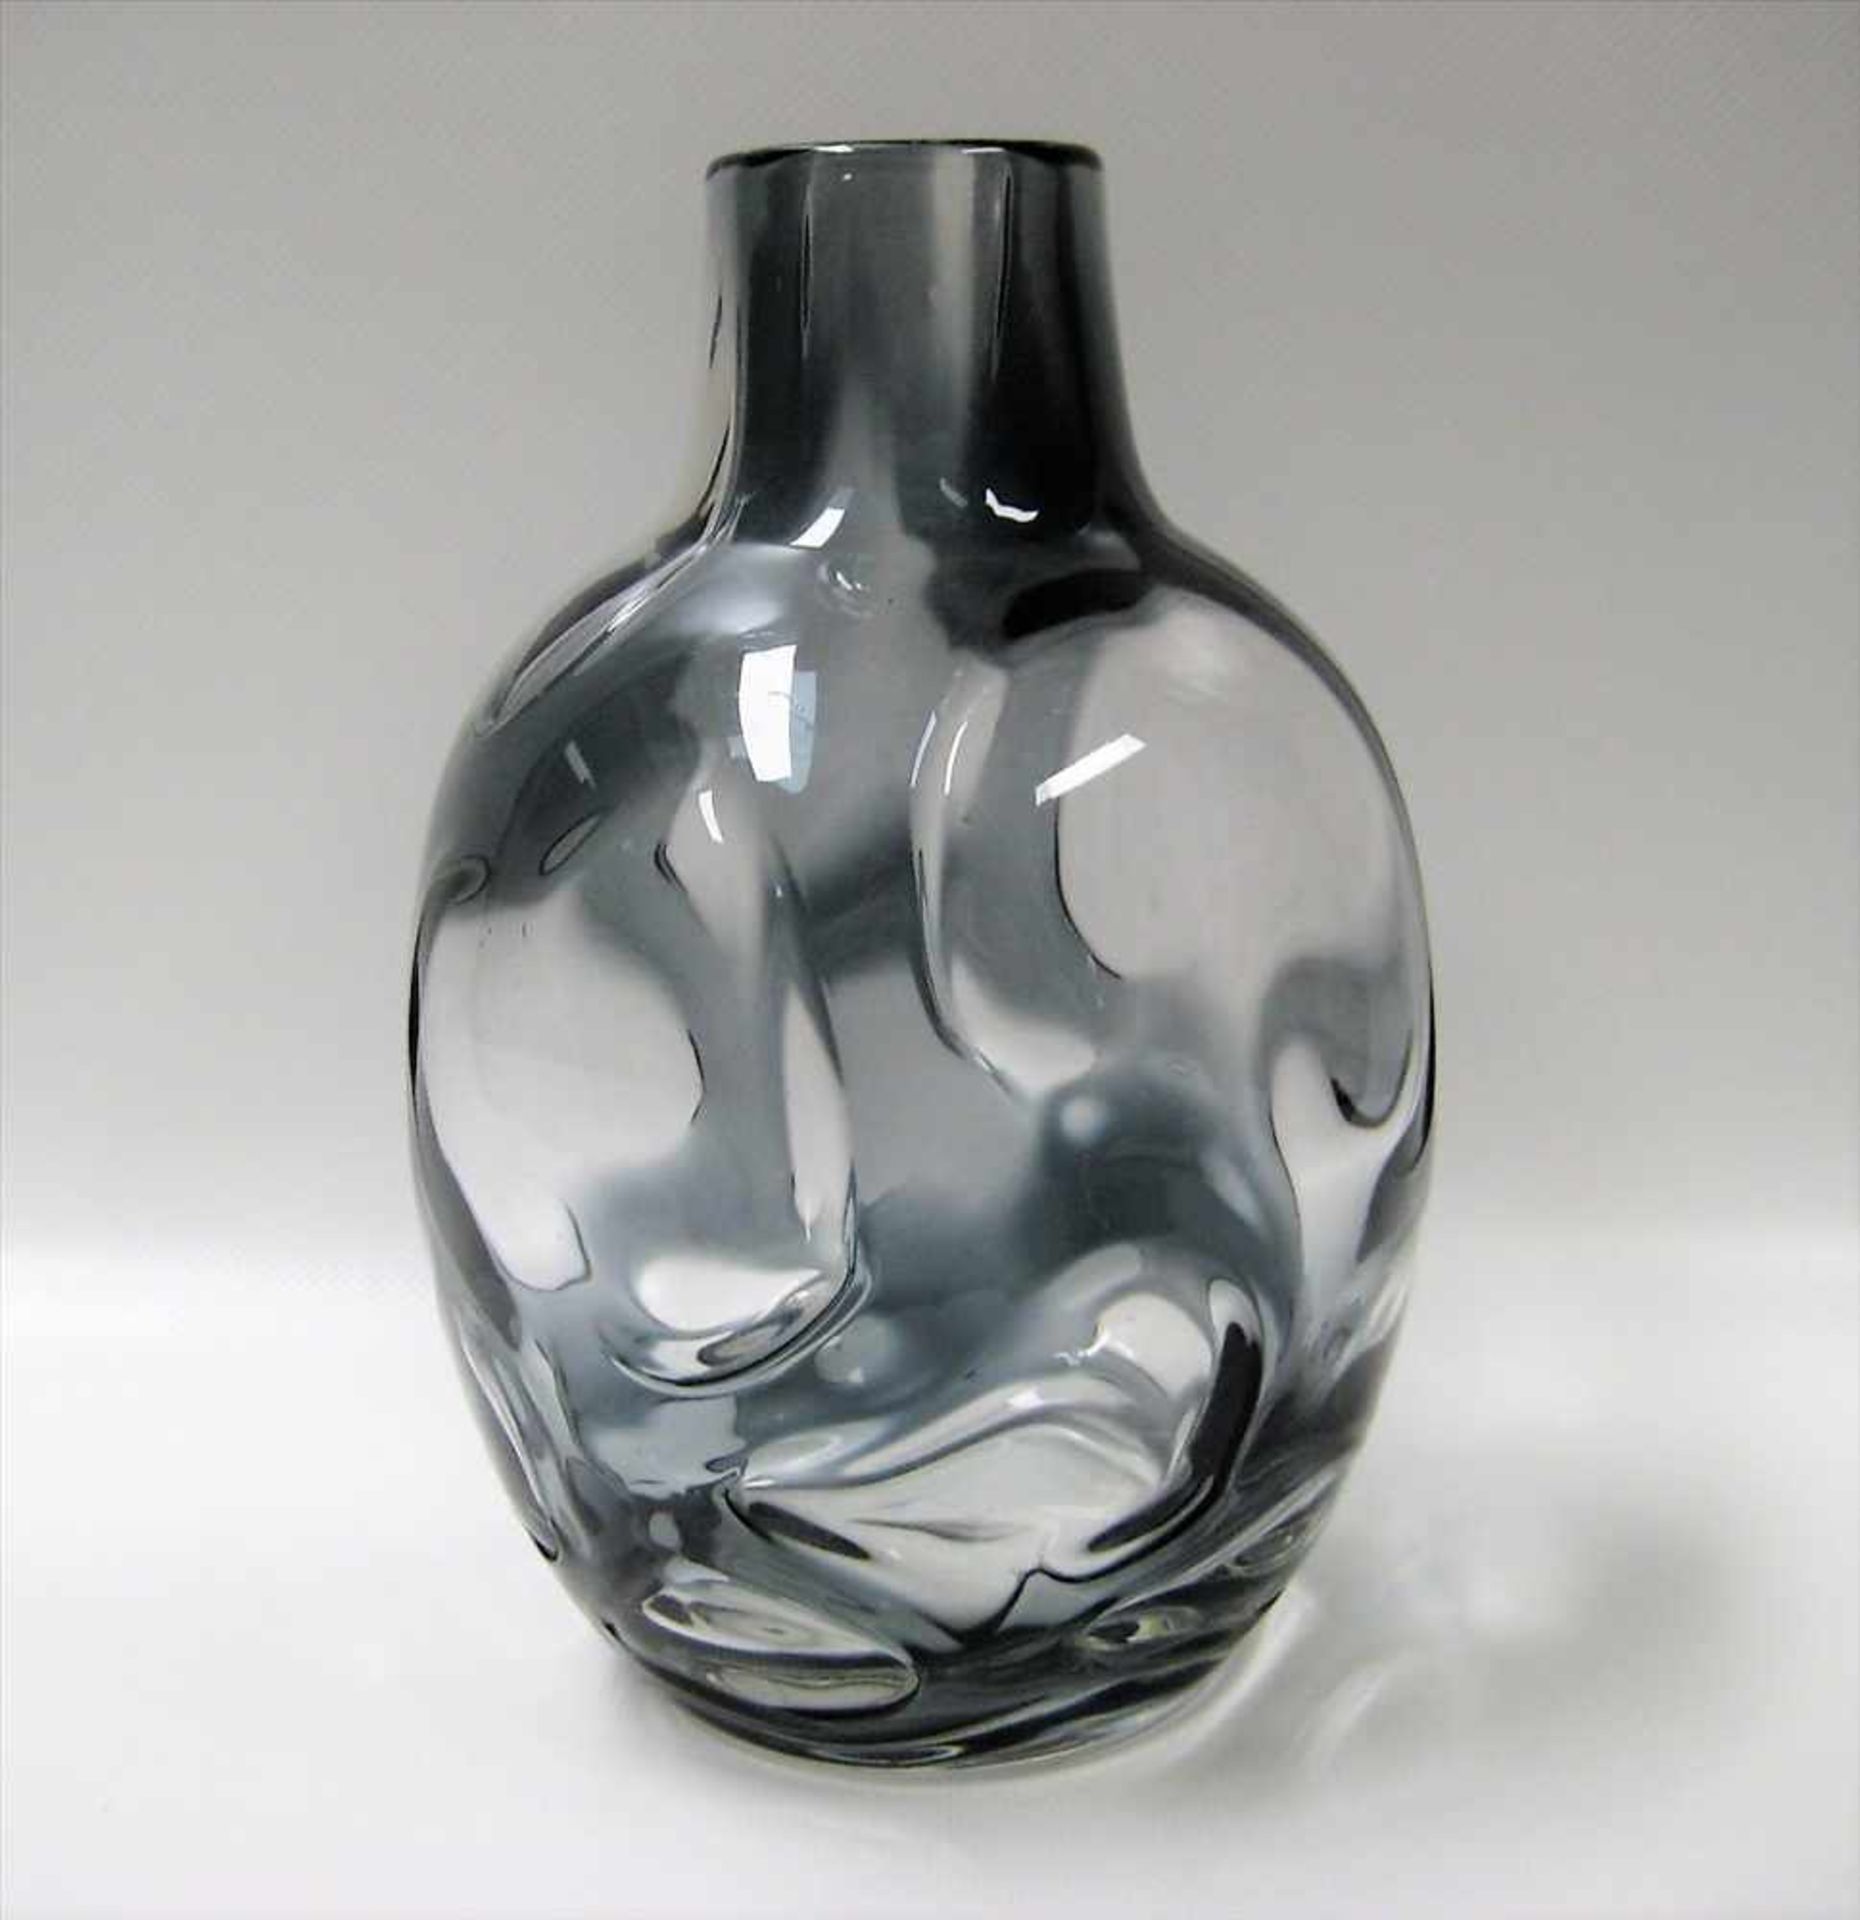 Vase, Ariel, 1950/60er Jahre, gräulich-blaues Glas, h 21 cm, d 13 cm.